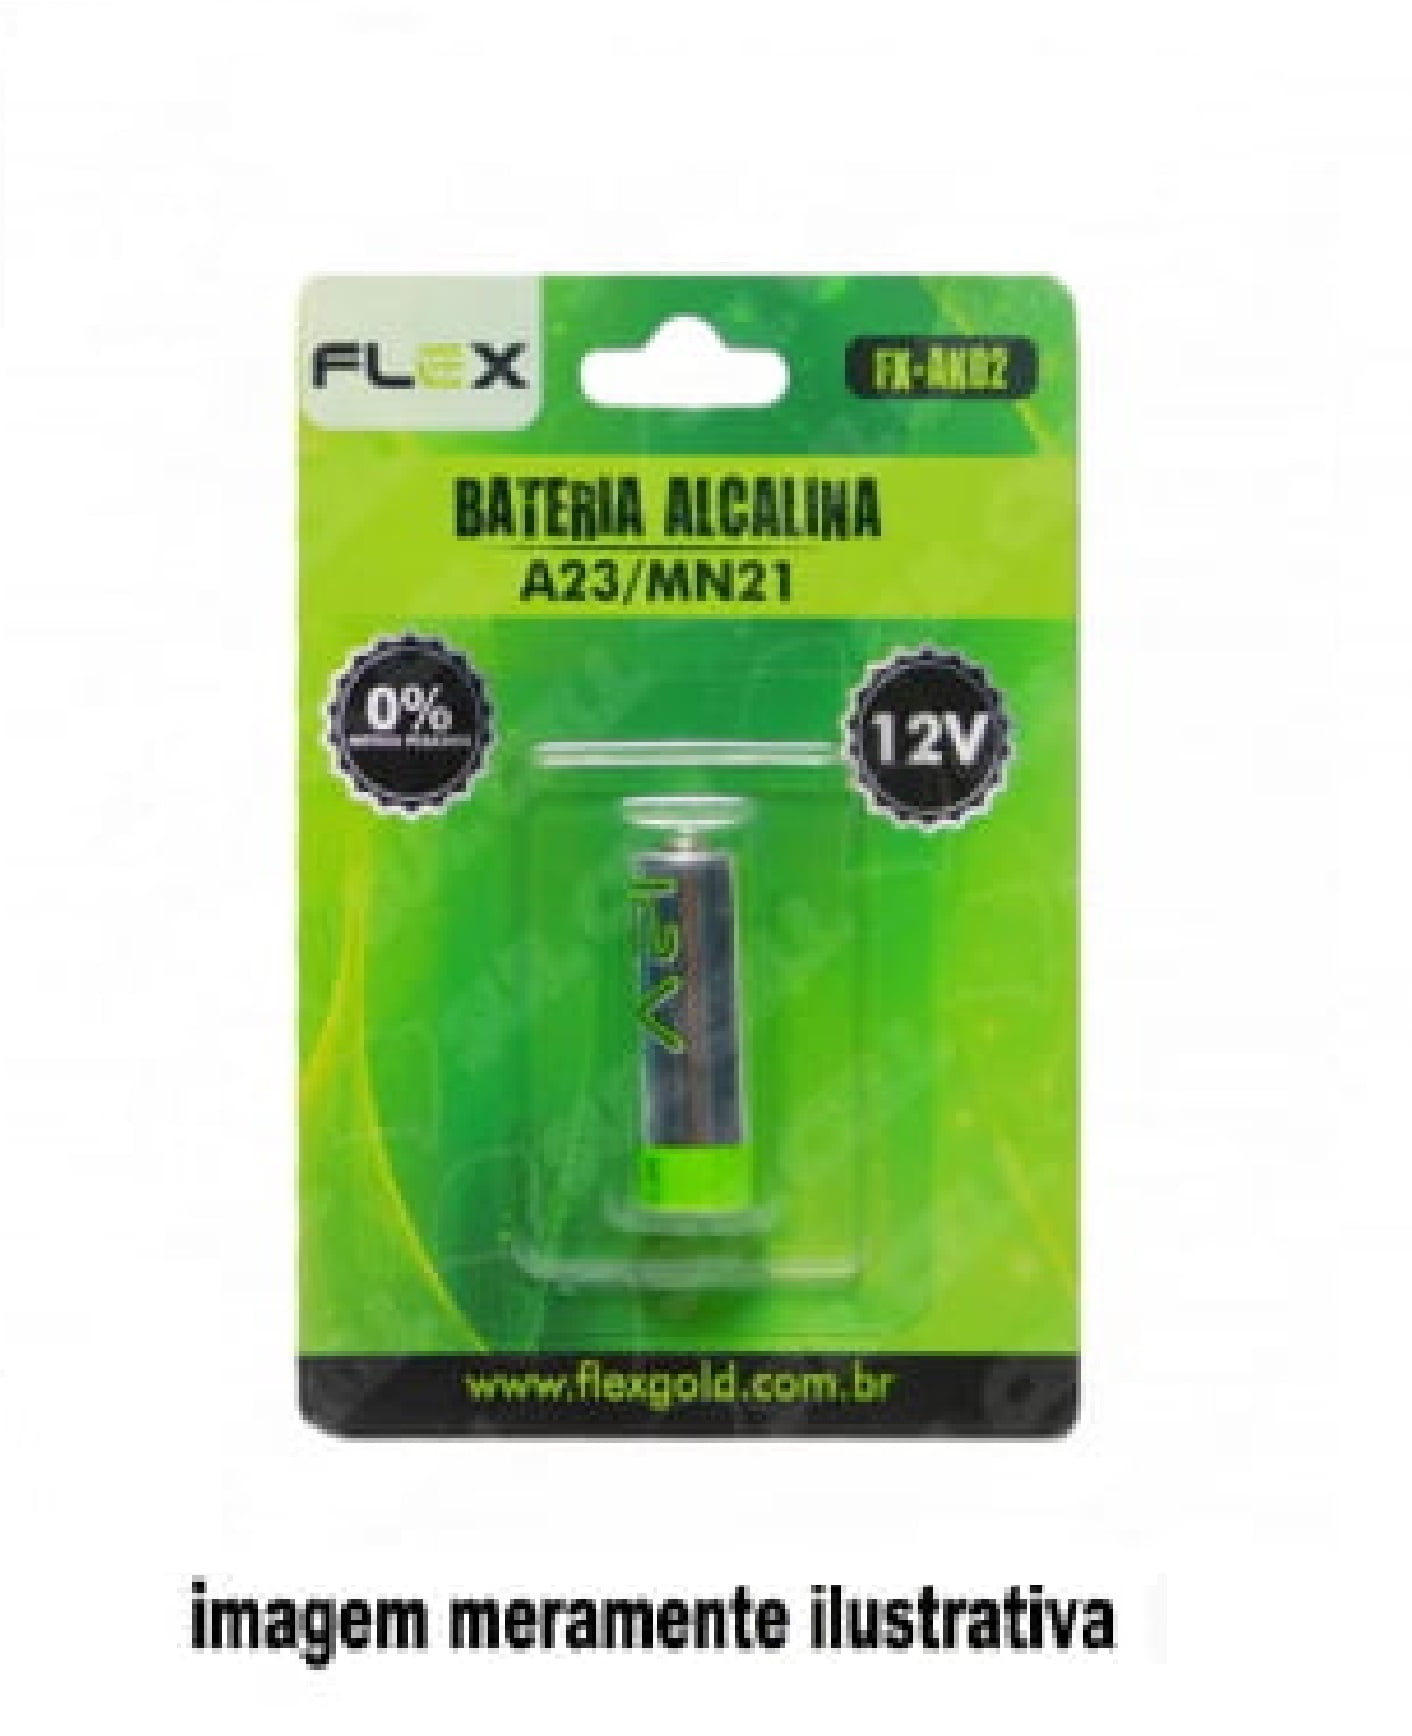 BATERIA ALCALINA A23 MN2112V FLEX (FX-AK02)